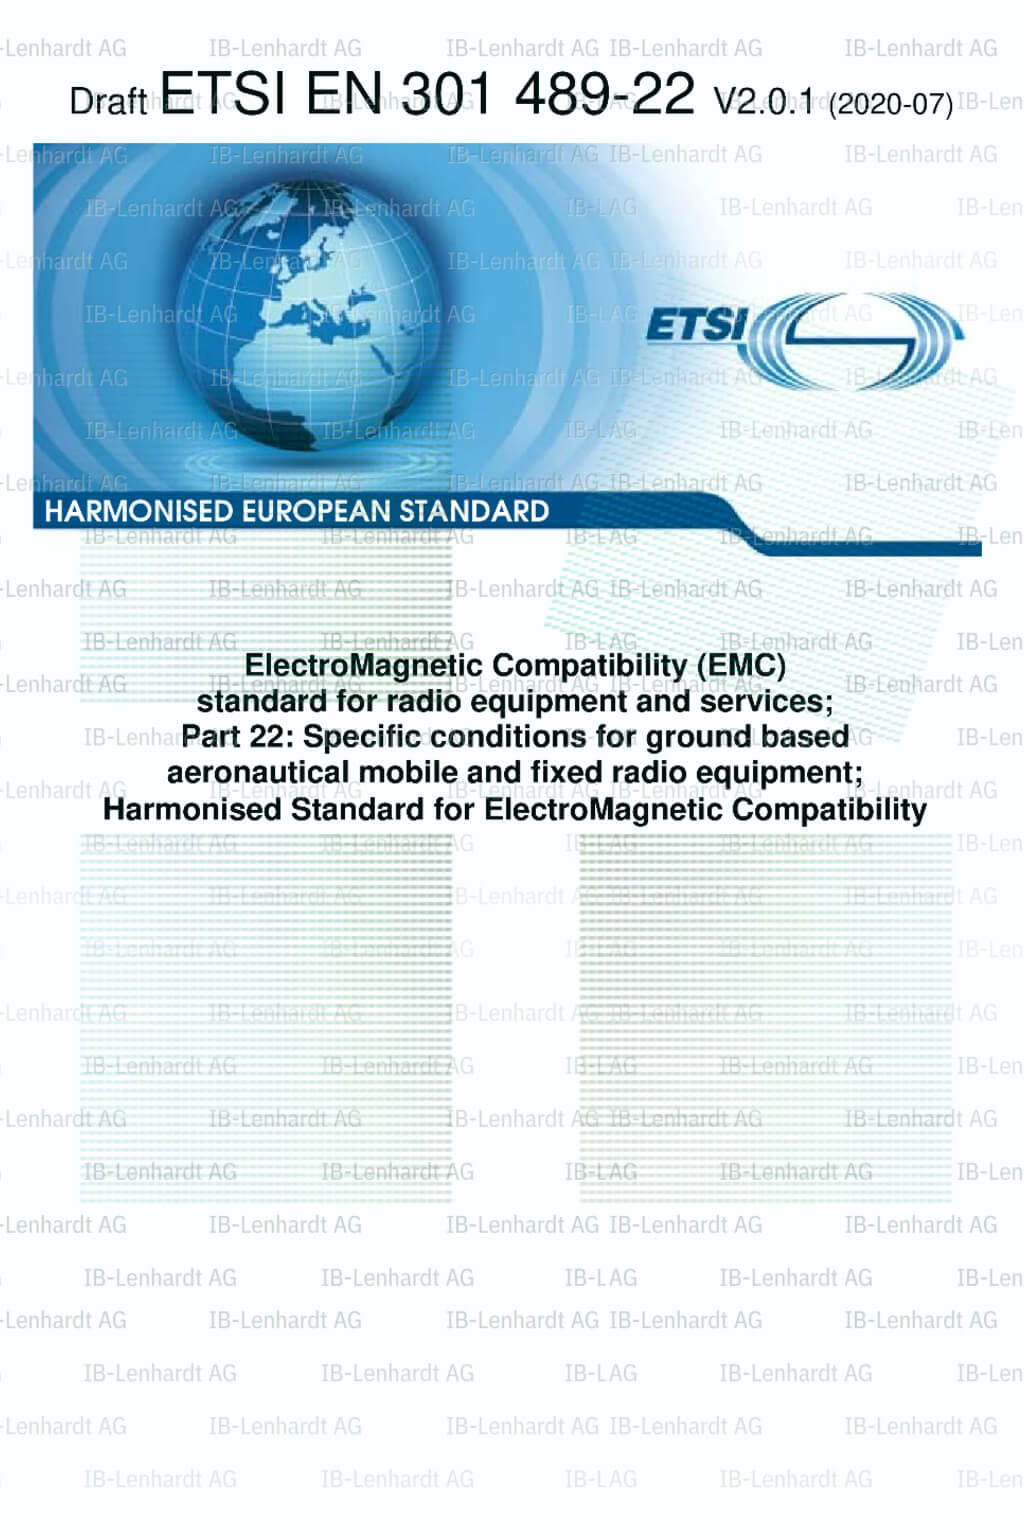 ETSI EN 301 489-22 V2.0.1